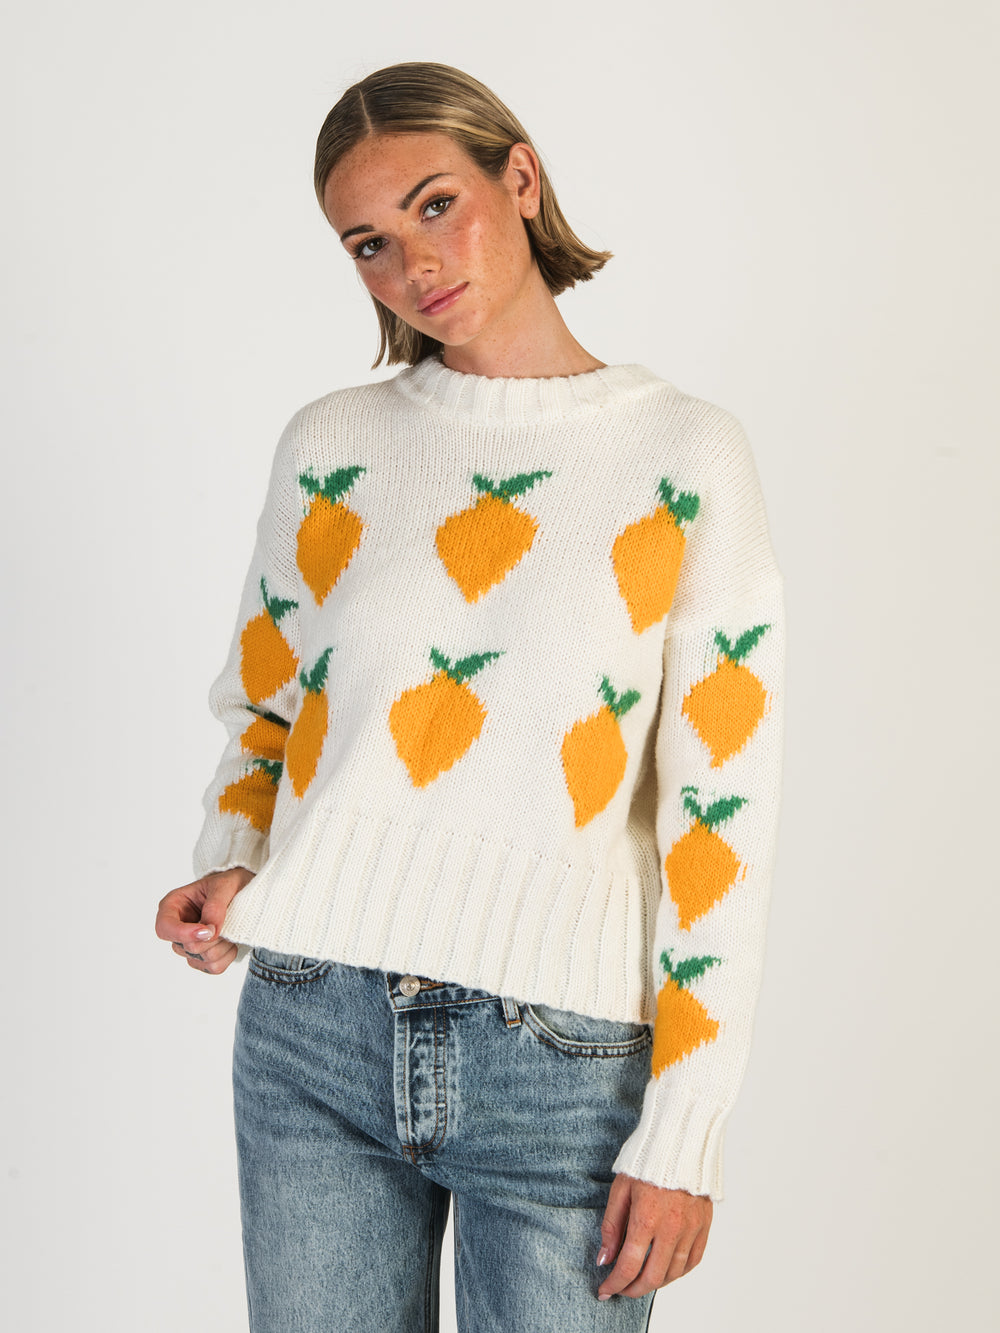 Fruity sweater, Lemon knit sweater